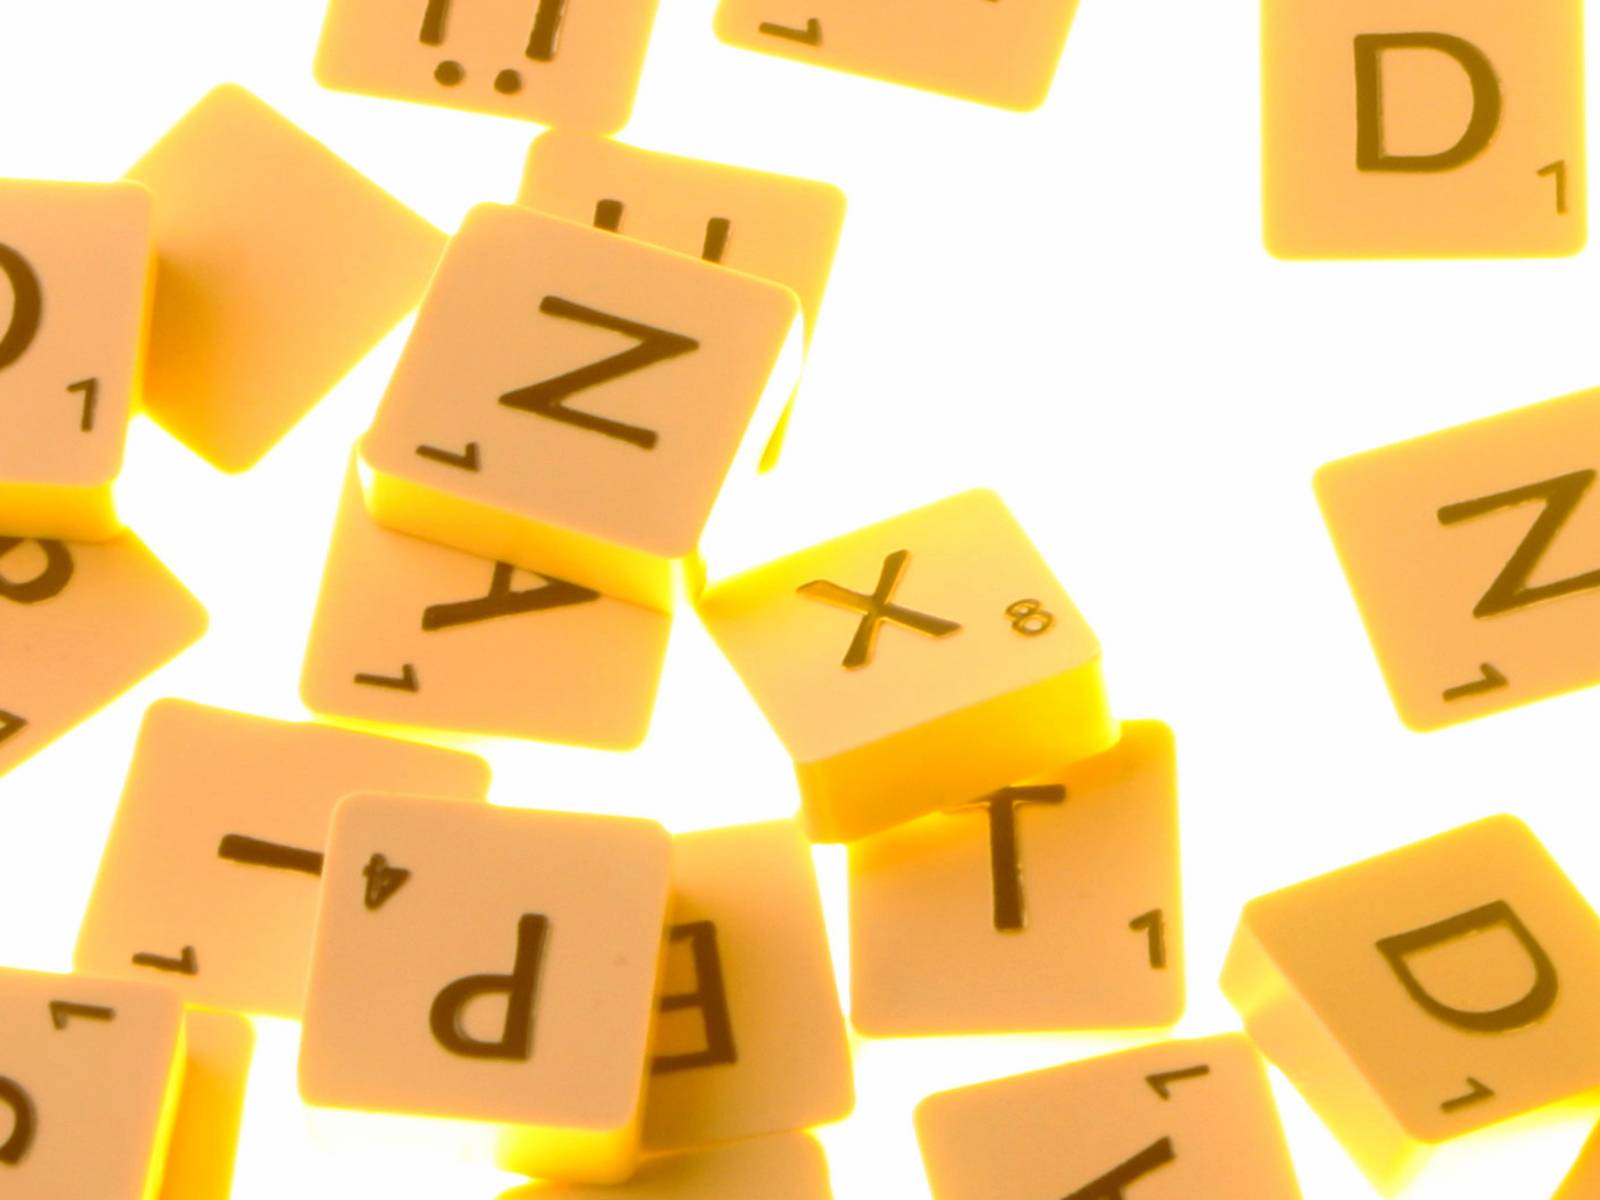 Spielsteine tragen einzelne Buchstaben und liegen durcheinander.